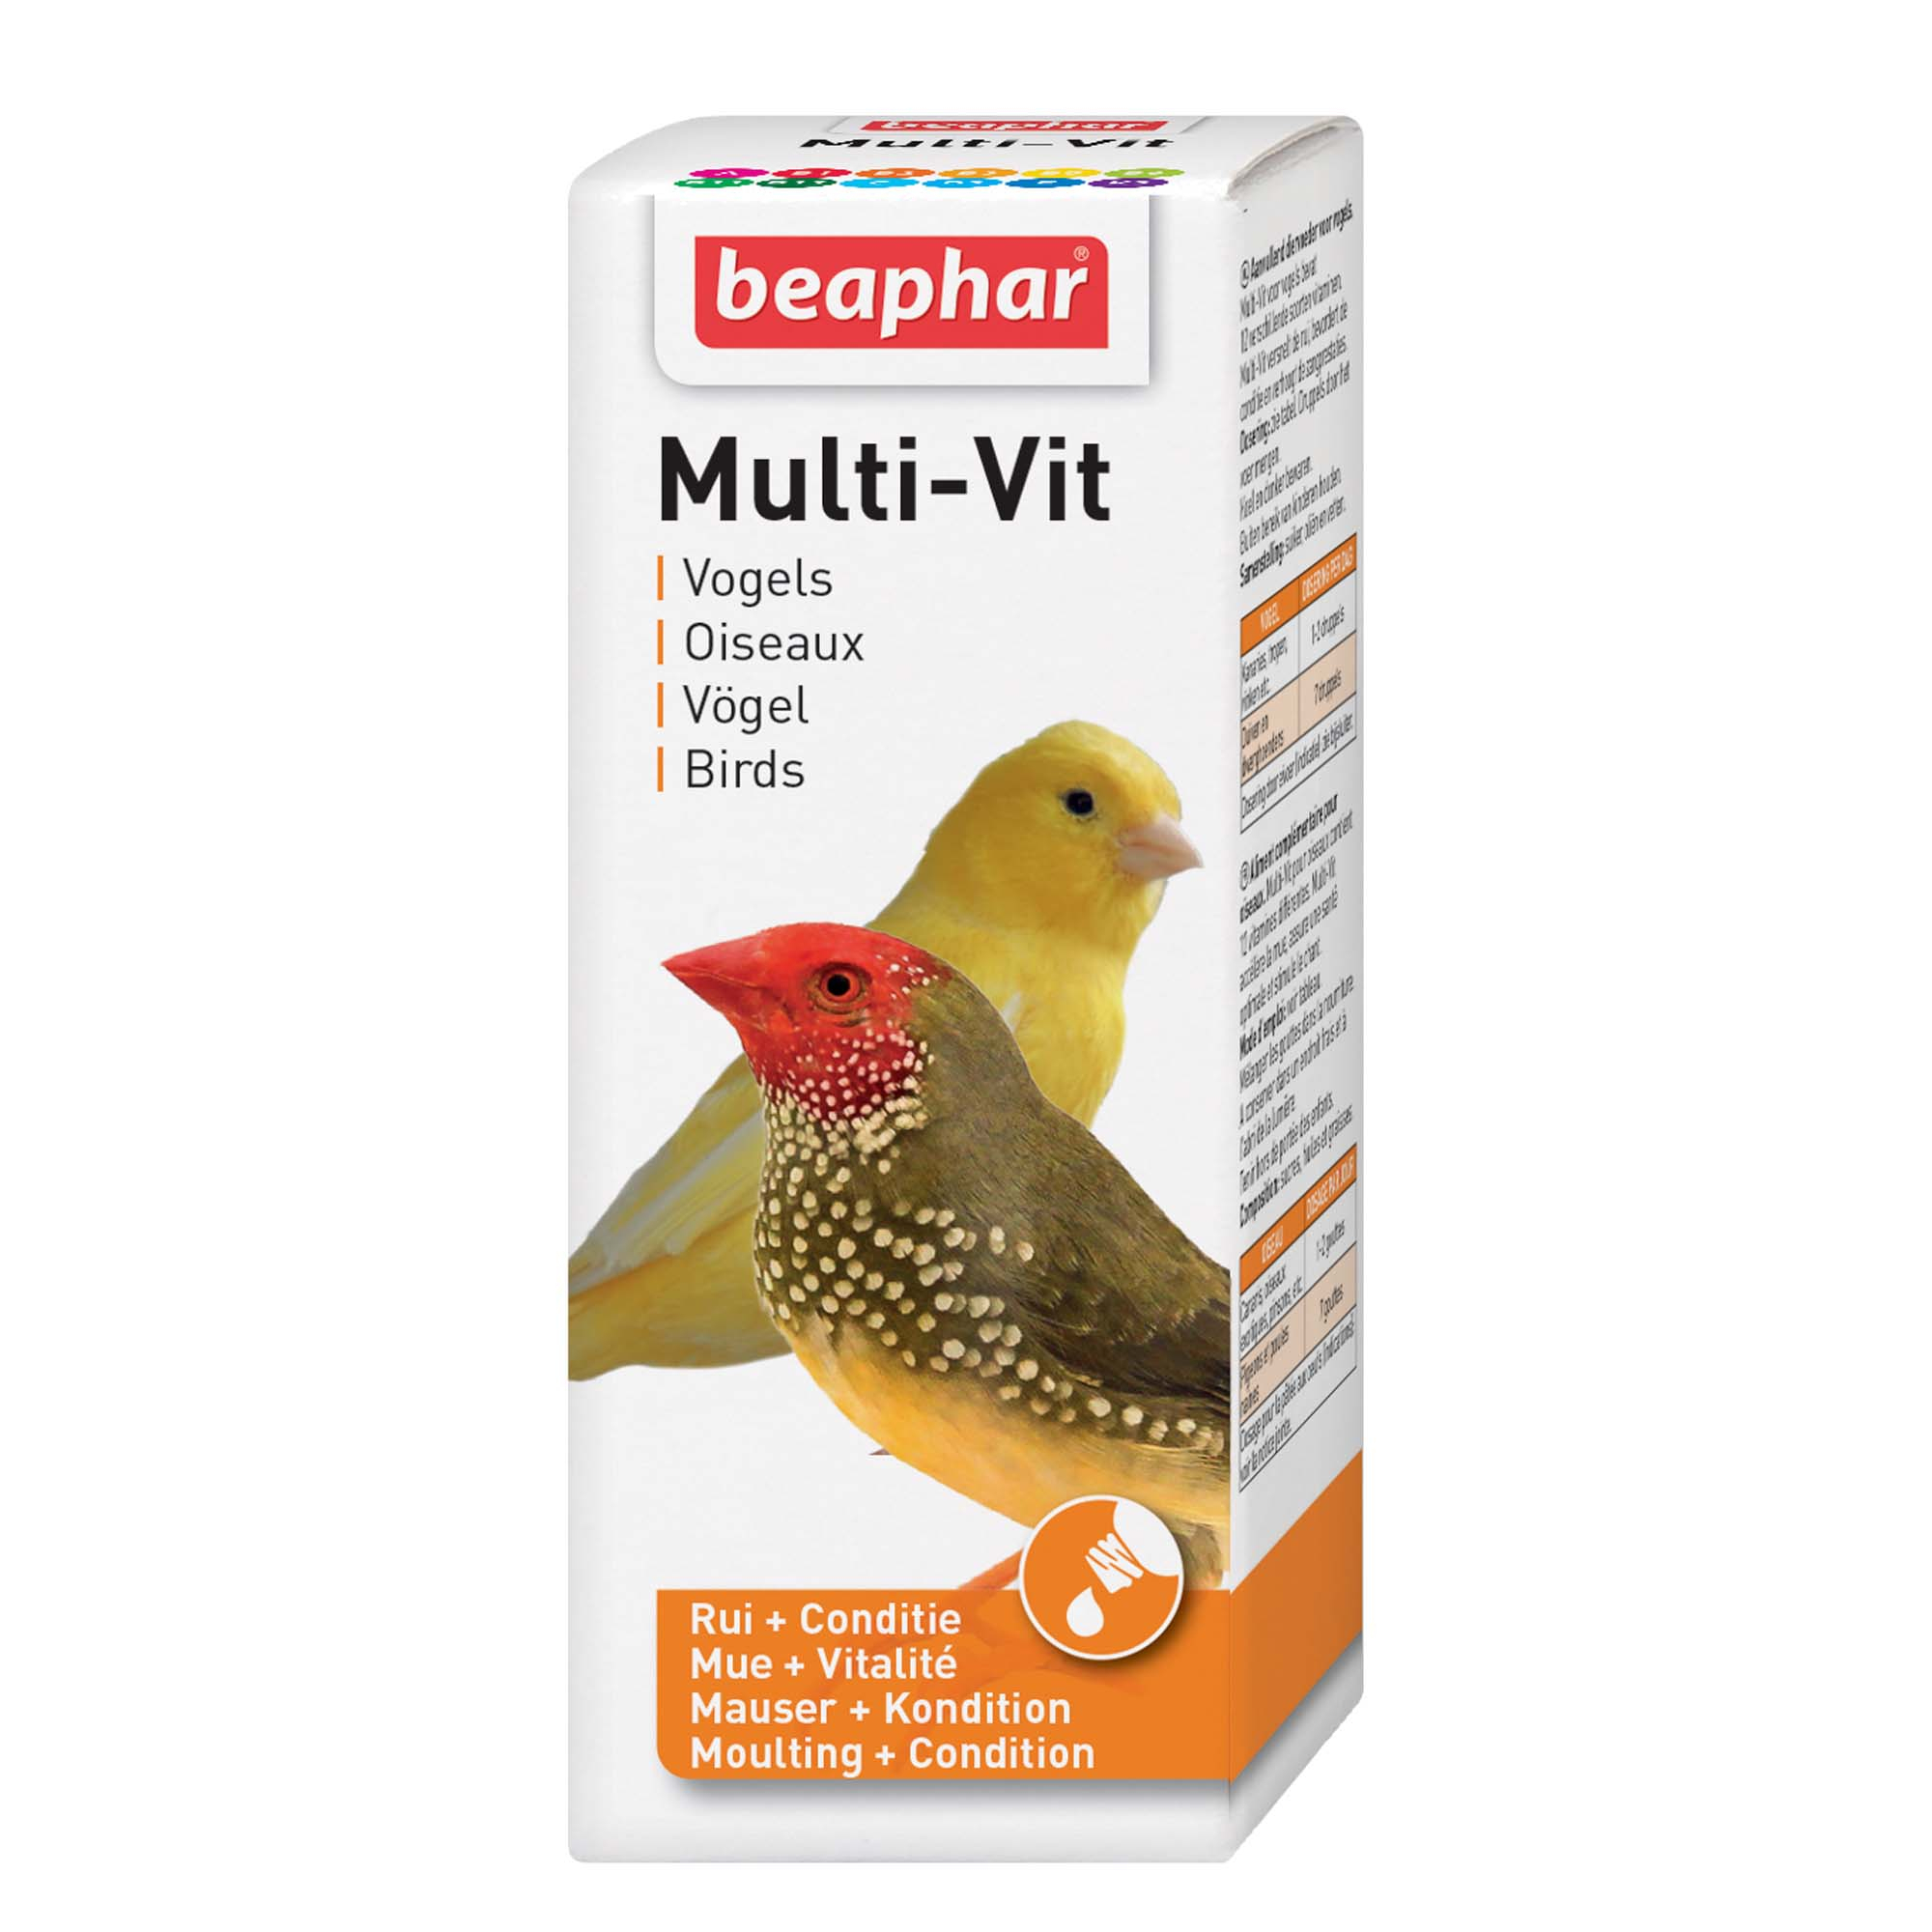 Multi-vit, vitamines pour oiseaux